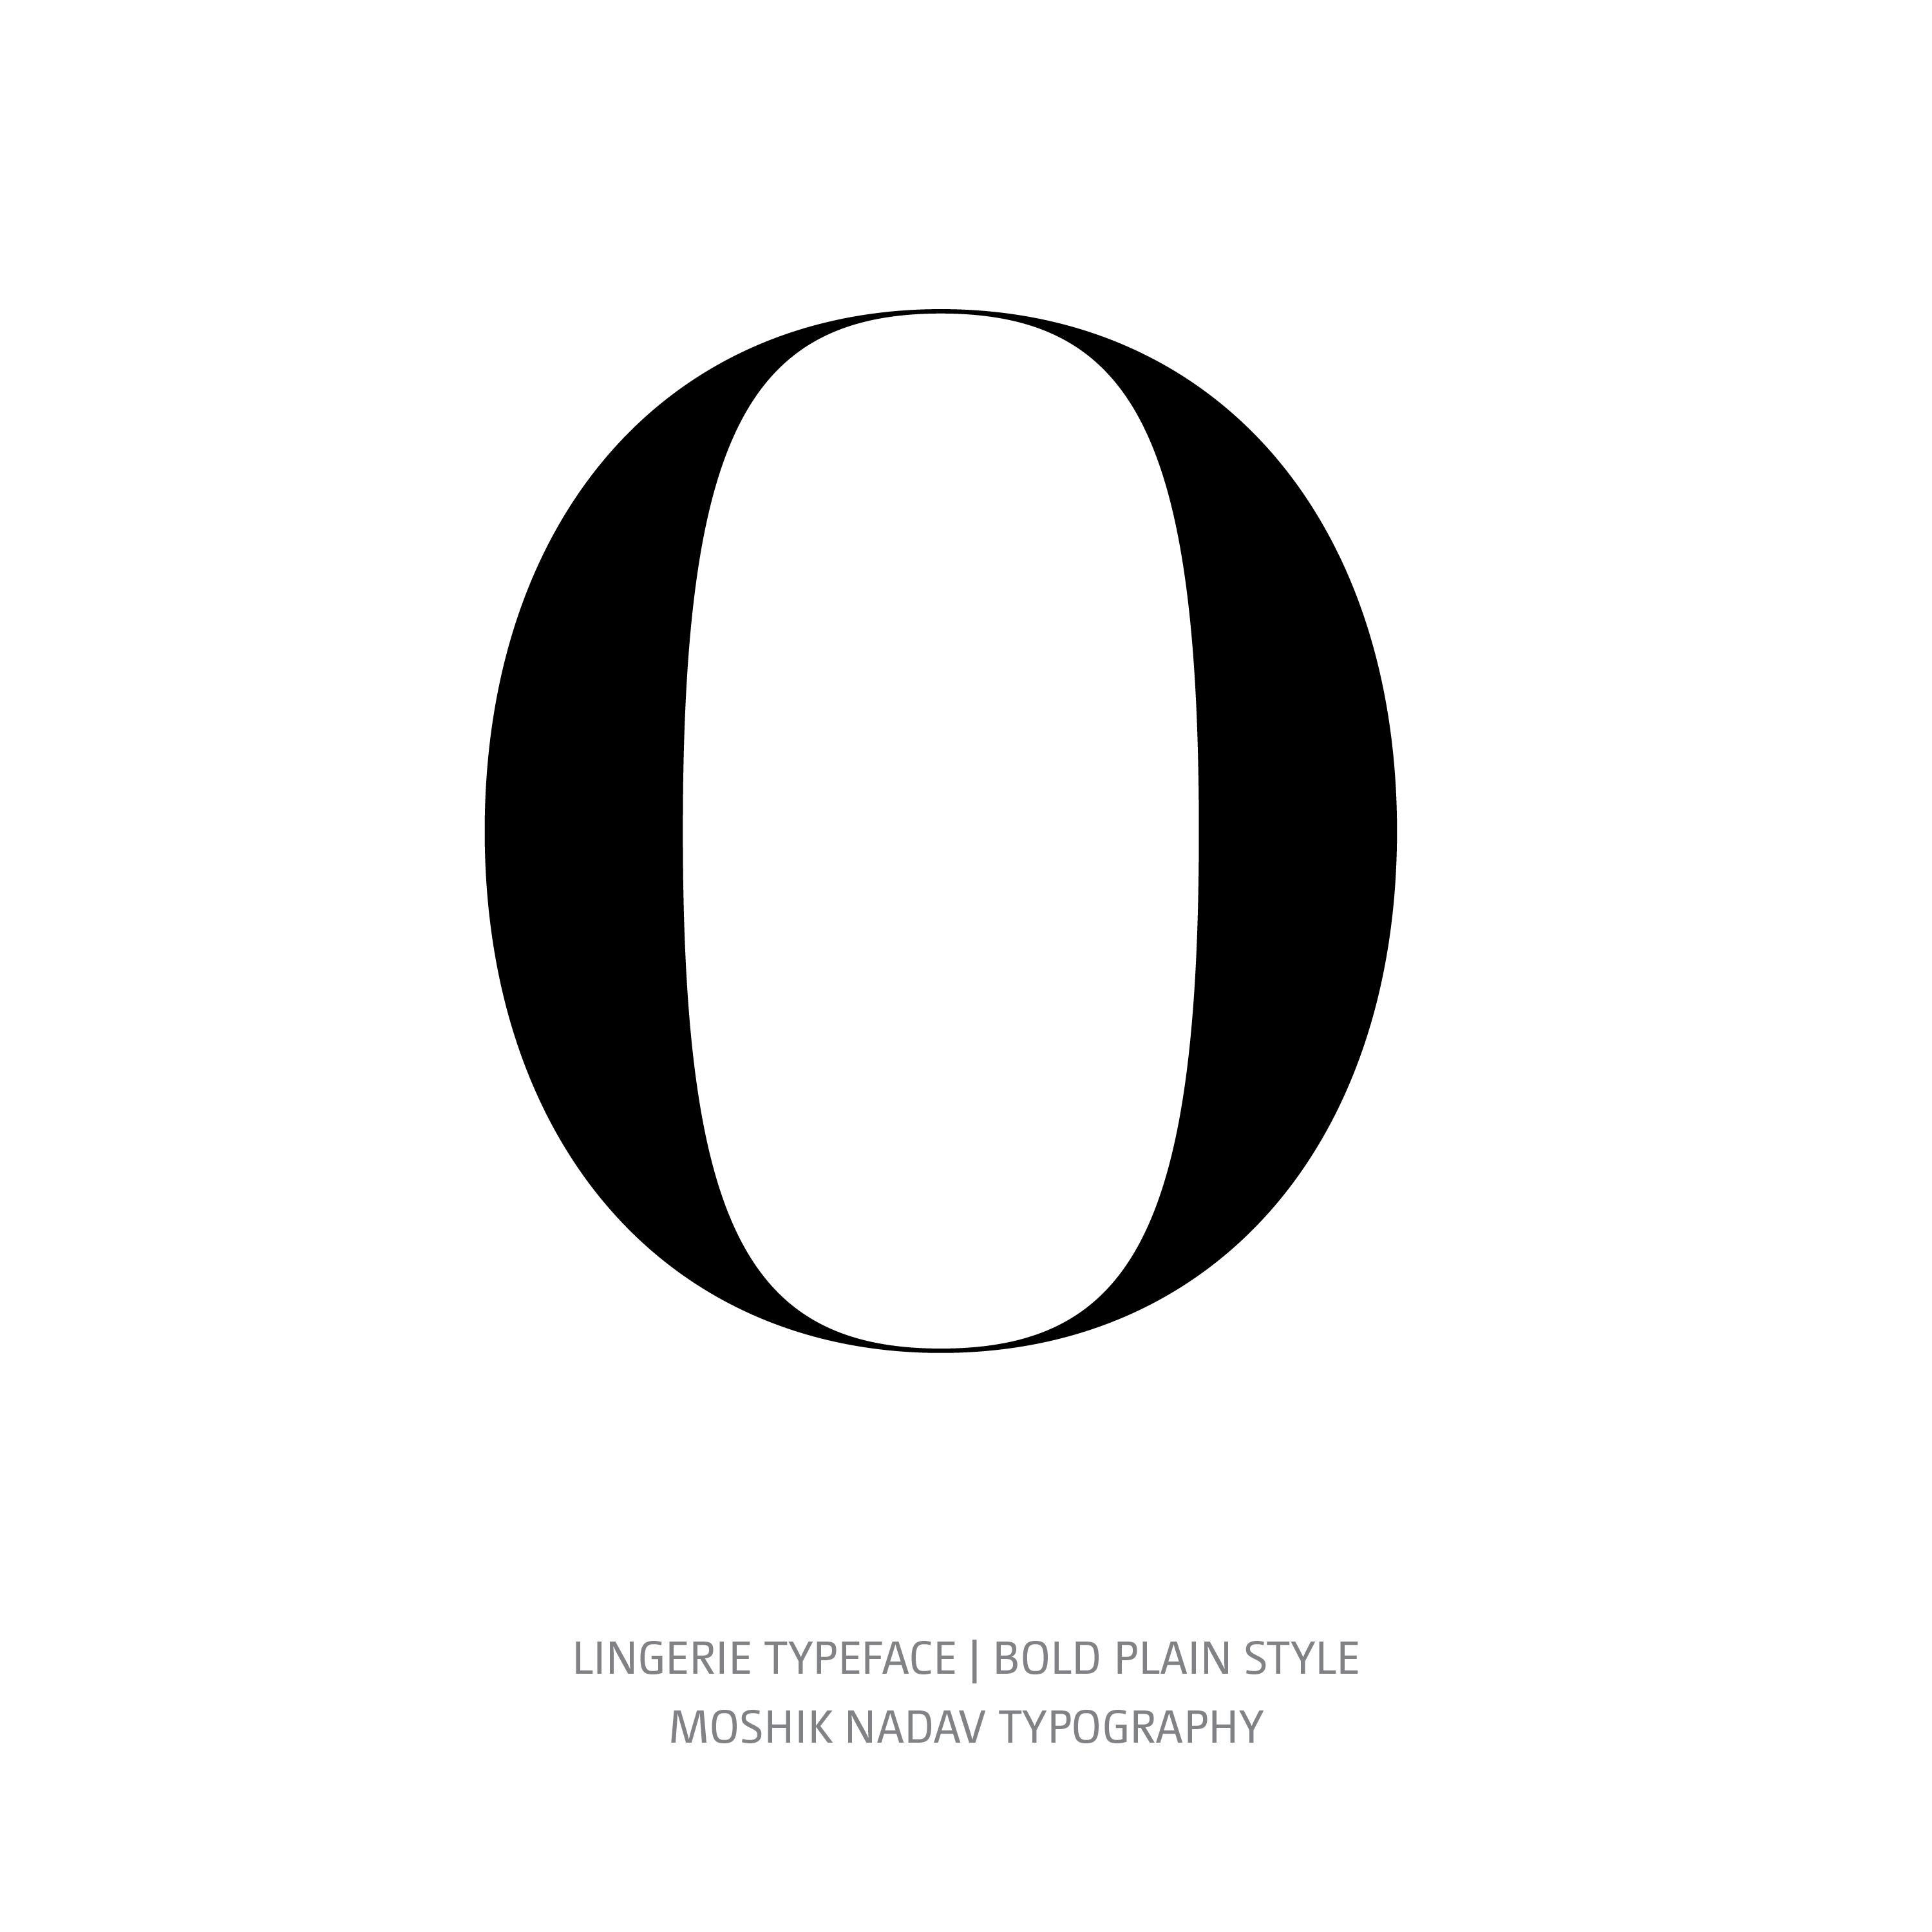 Lingerie Typeface Bold Plain 0